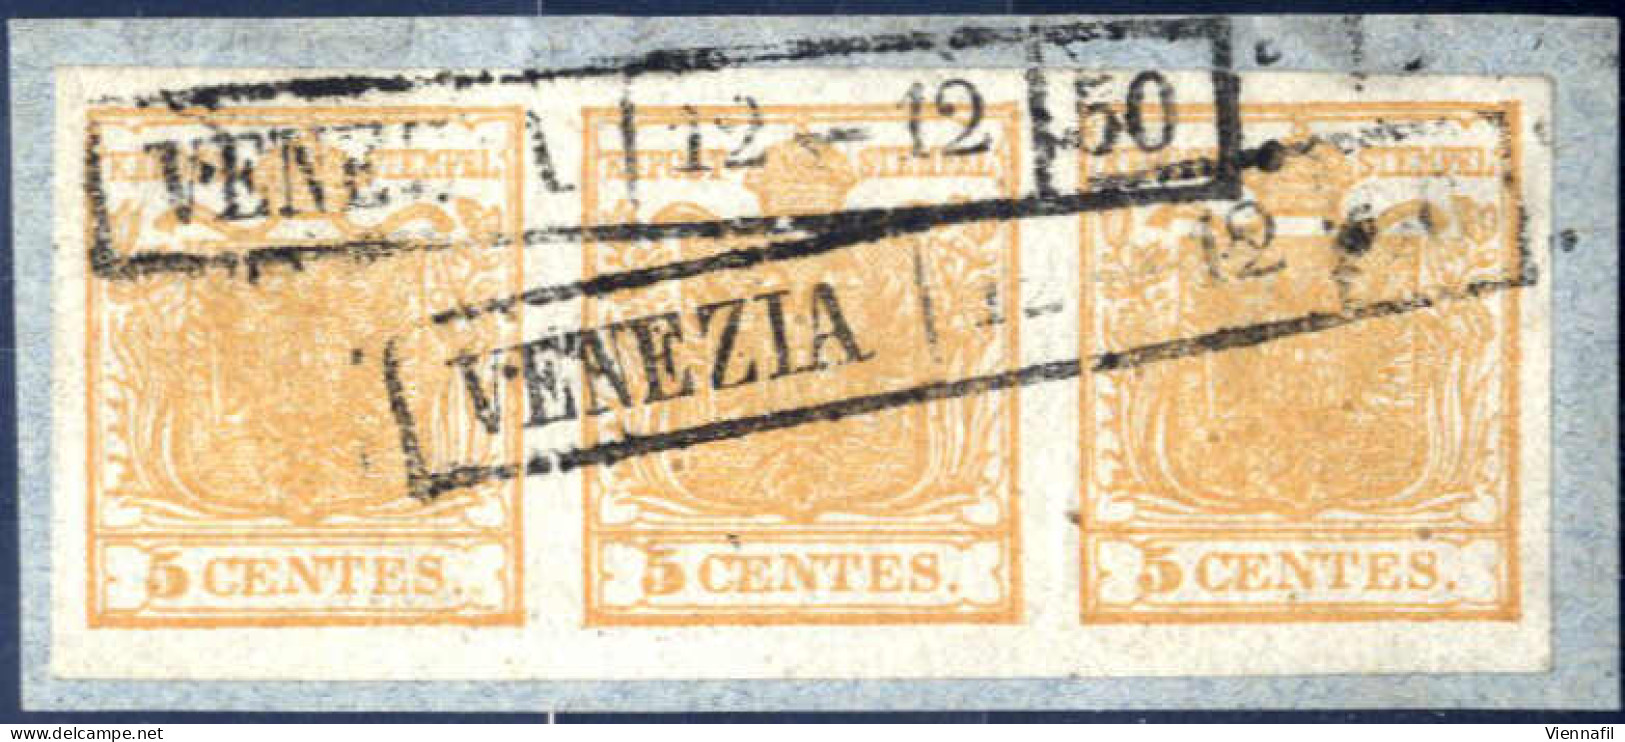 Piece 1850, 5 Cent. Giallo Bistro Striscia Orizzontale Di Tre Su Frammento Annullato Venezia 12-12-50, Splendido, Firmat - Lombardije-Venetië